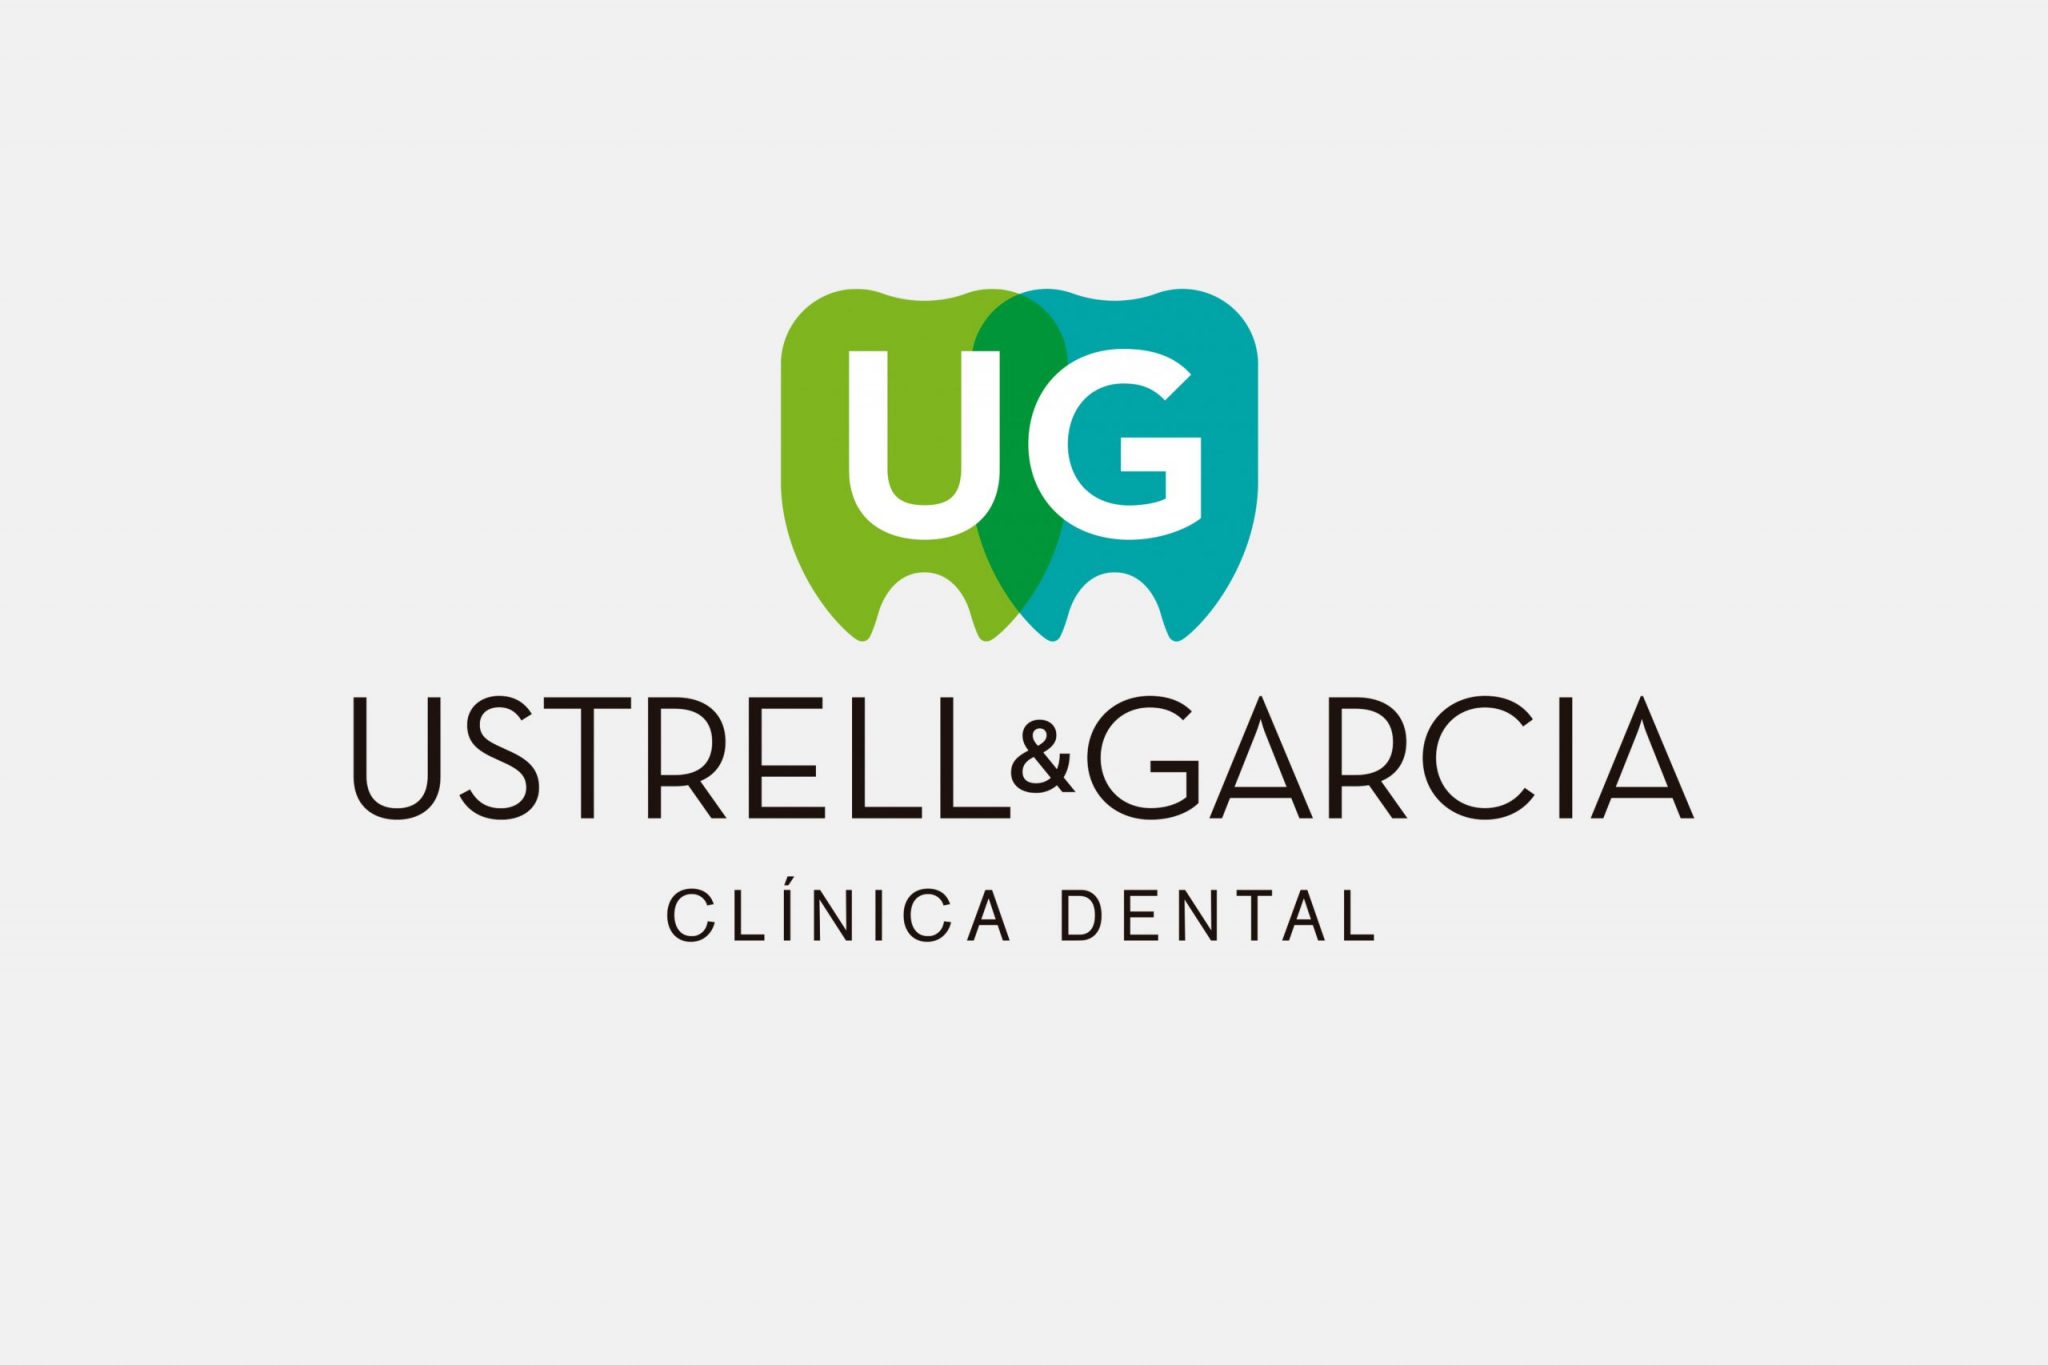 Logotip clínica dental